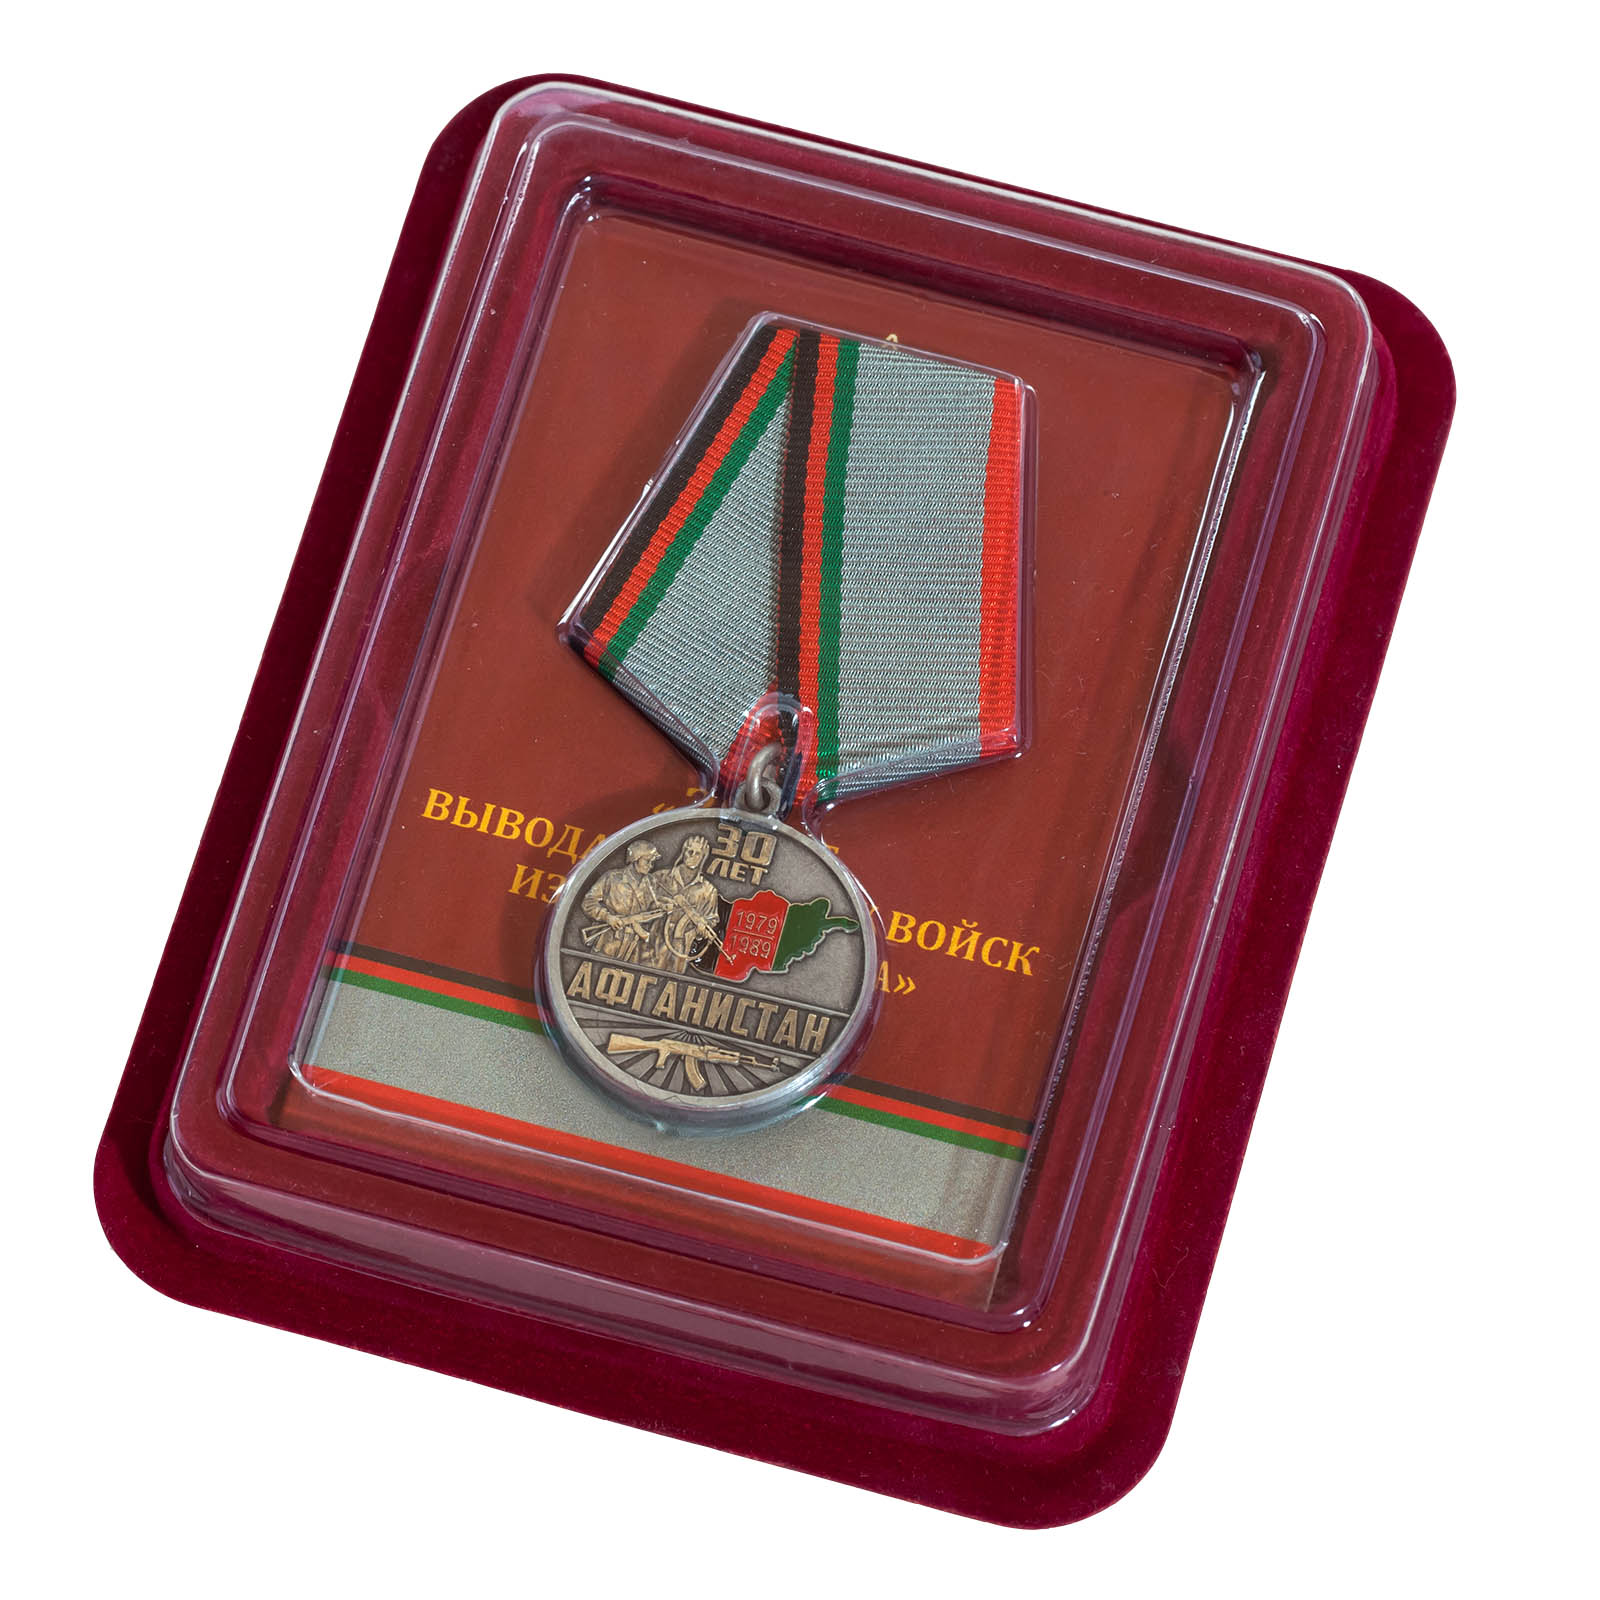 Купить медаль "30 лет. Афганистан" в наградном бордовом футляре